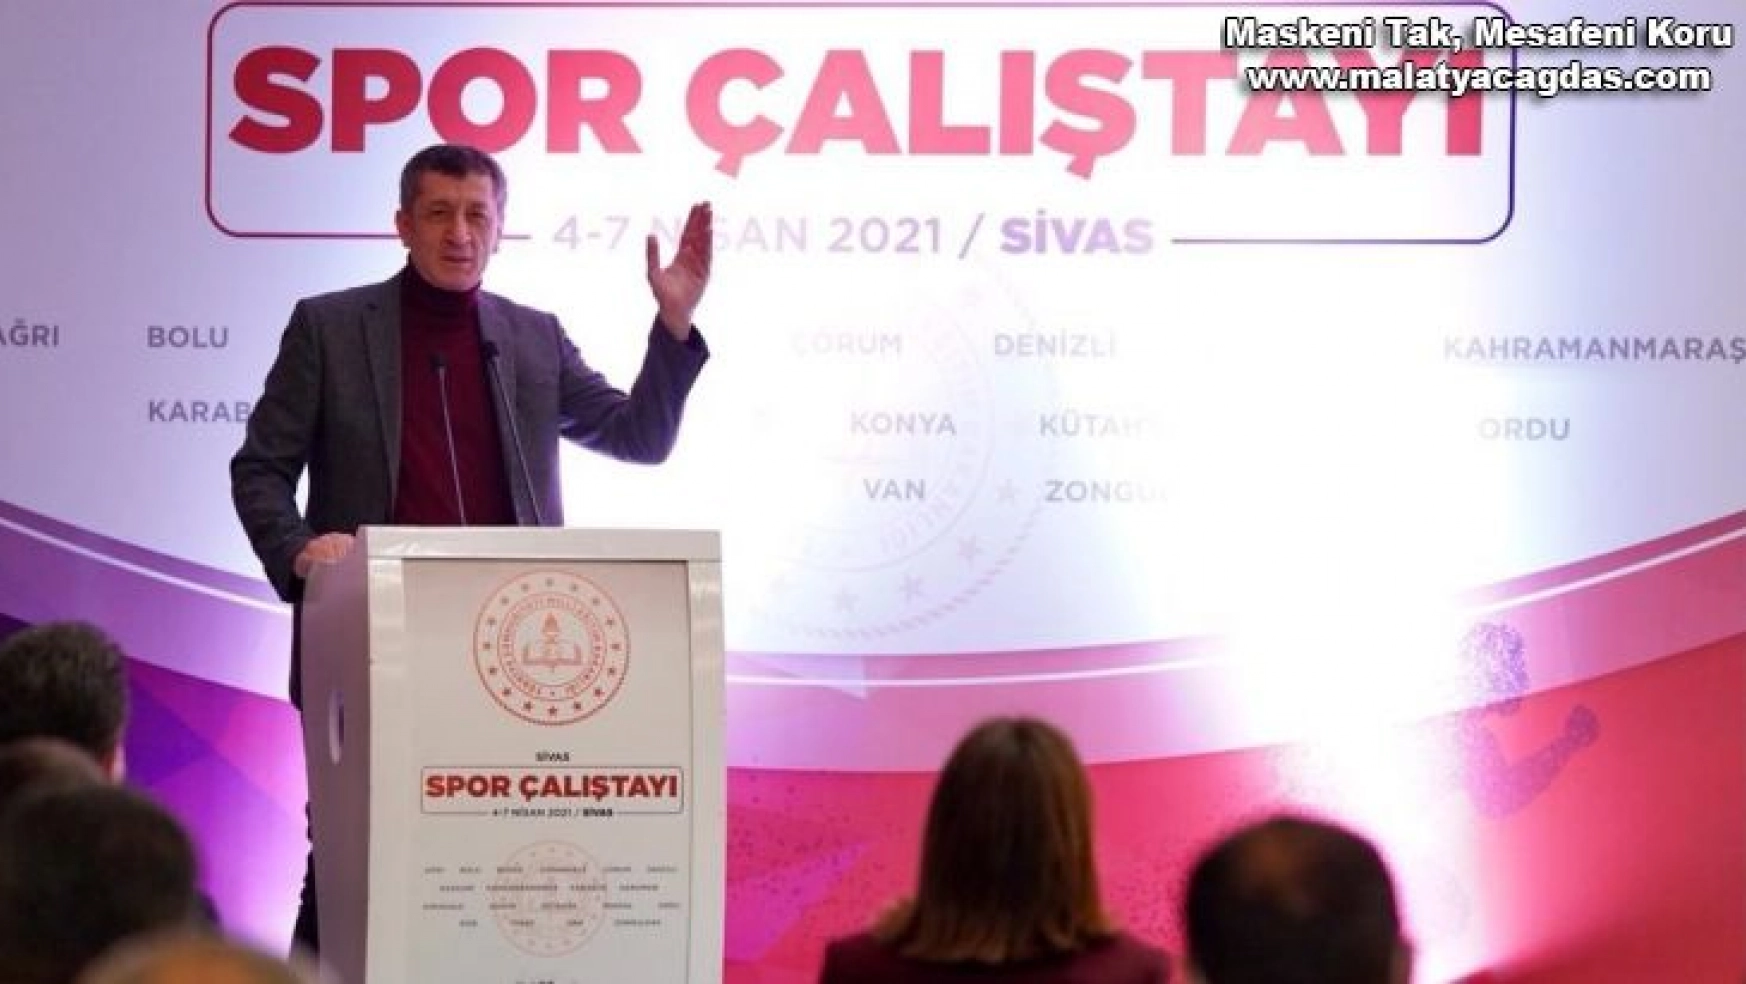 Milli Eğitim Bakanı Selçuk, Sivas'ta Spor Çalıştayı'na katıldı